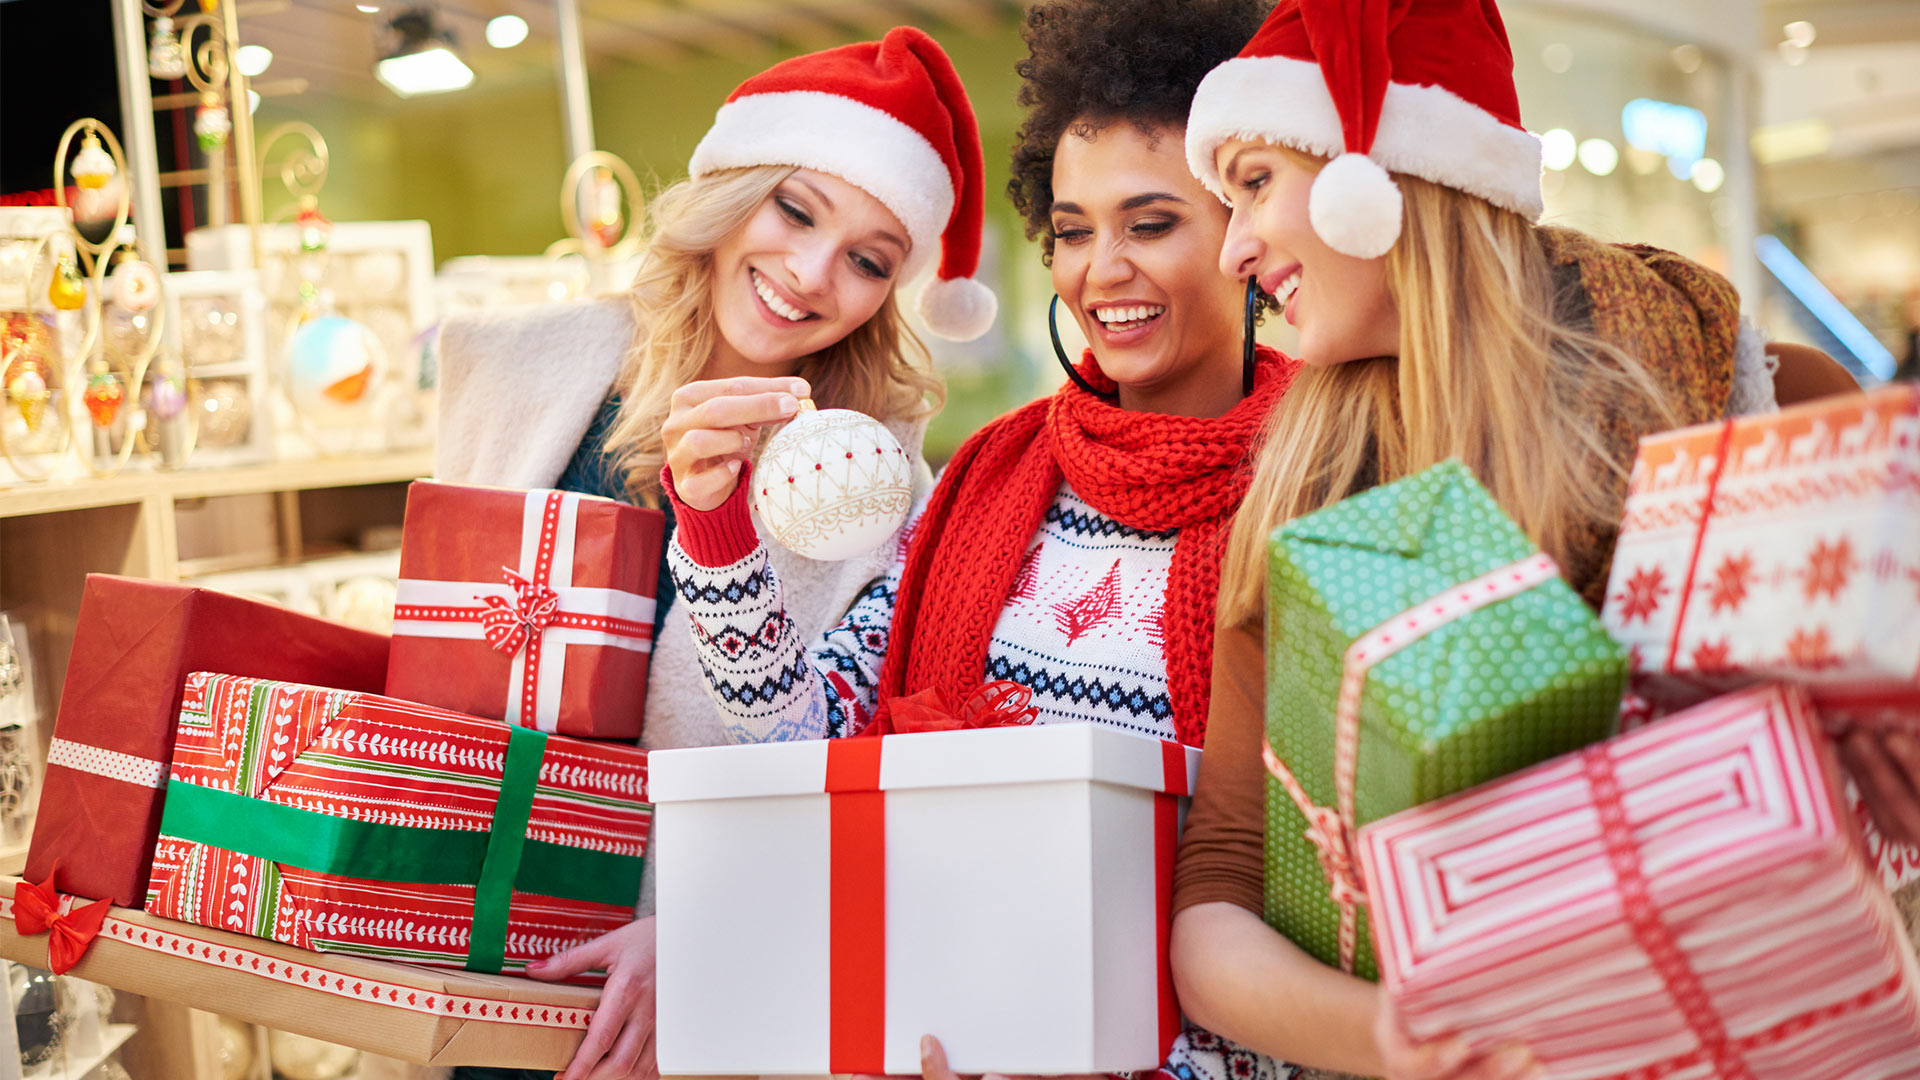 Las ventas después de Navidad y los cambios de regalos no deseados atraen a los compradores a los centros comerciales